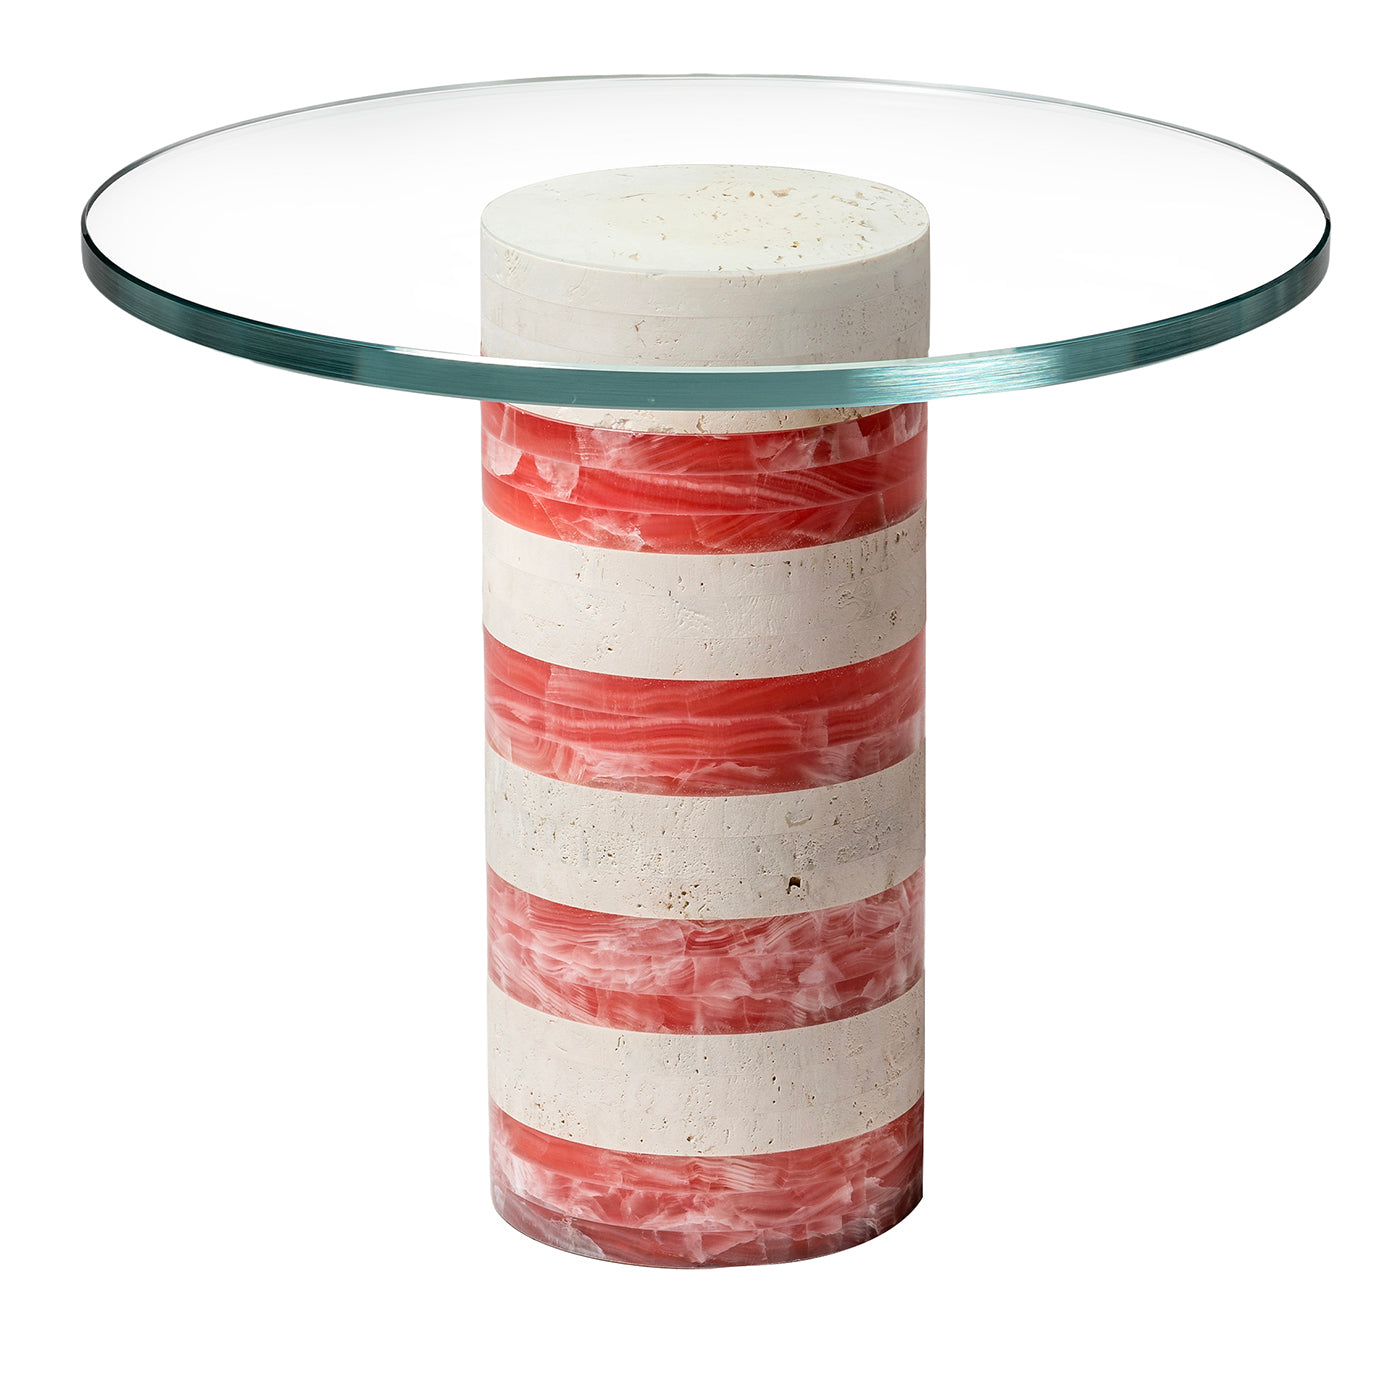 Table d'appoint rouge Architexture de Patricia Urquiola - Vue principale